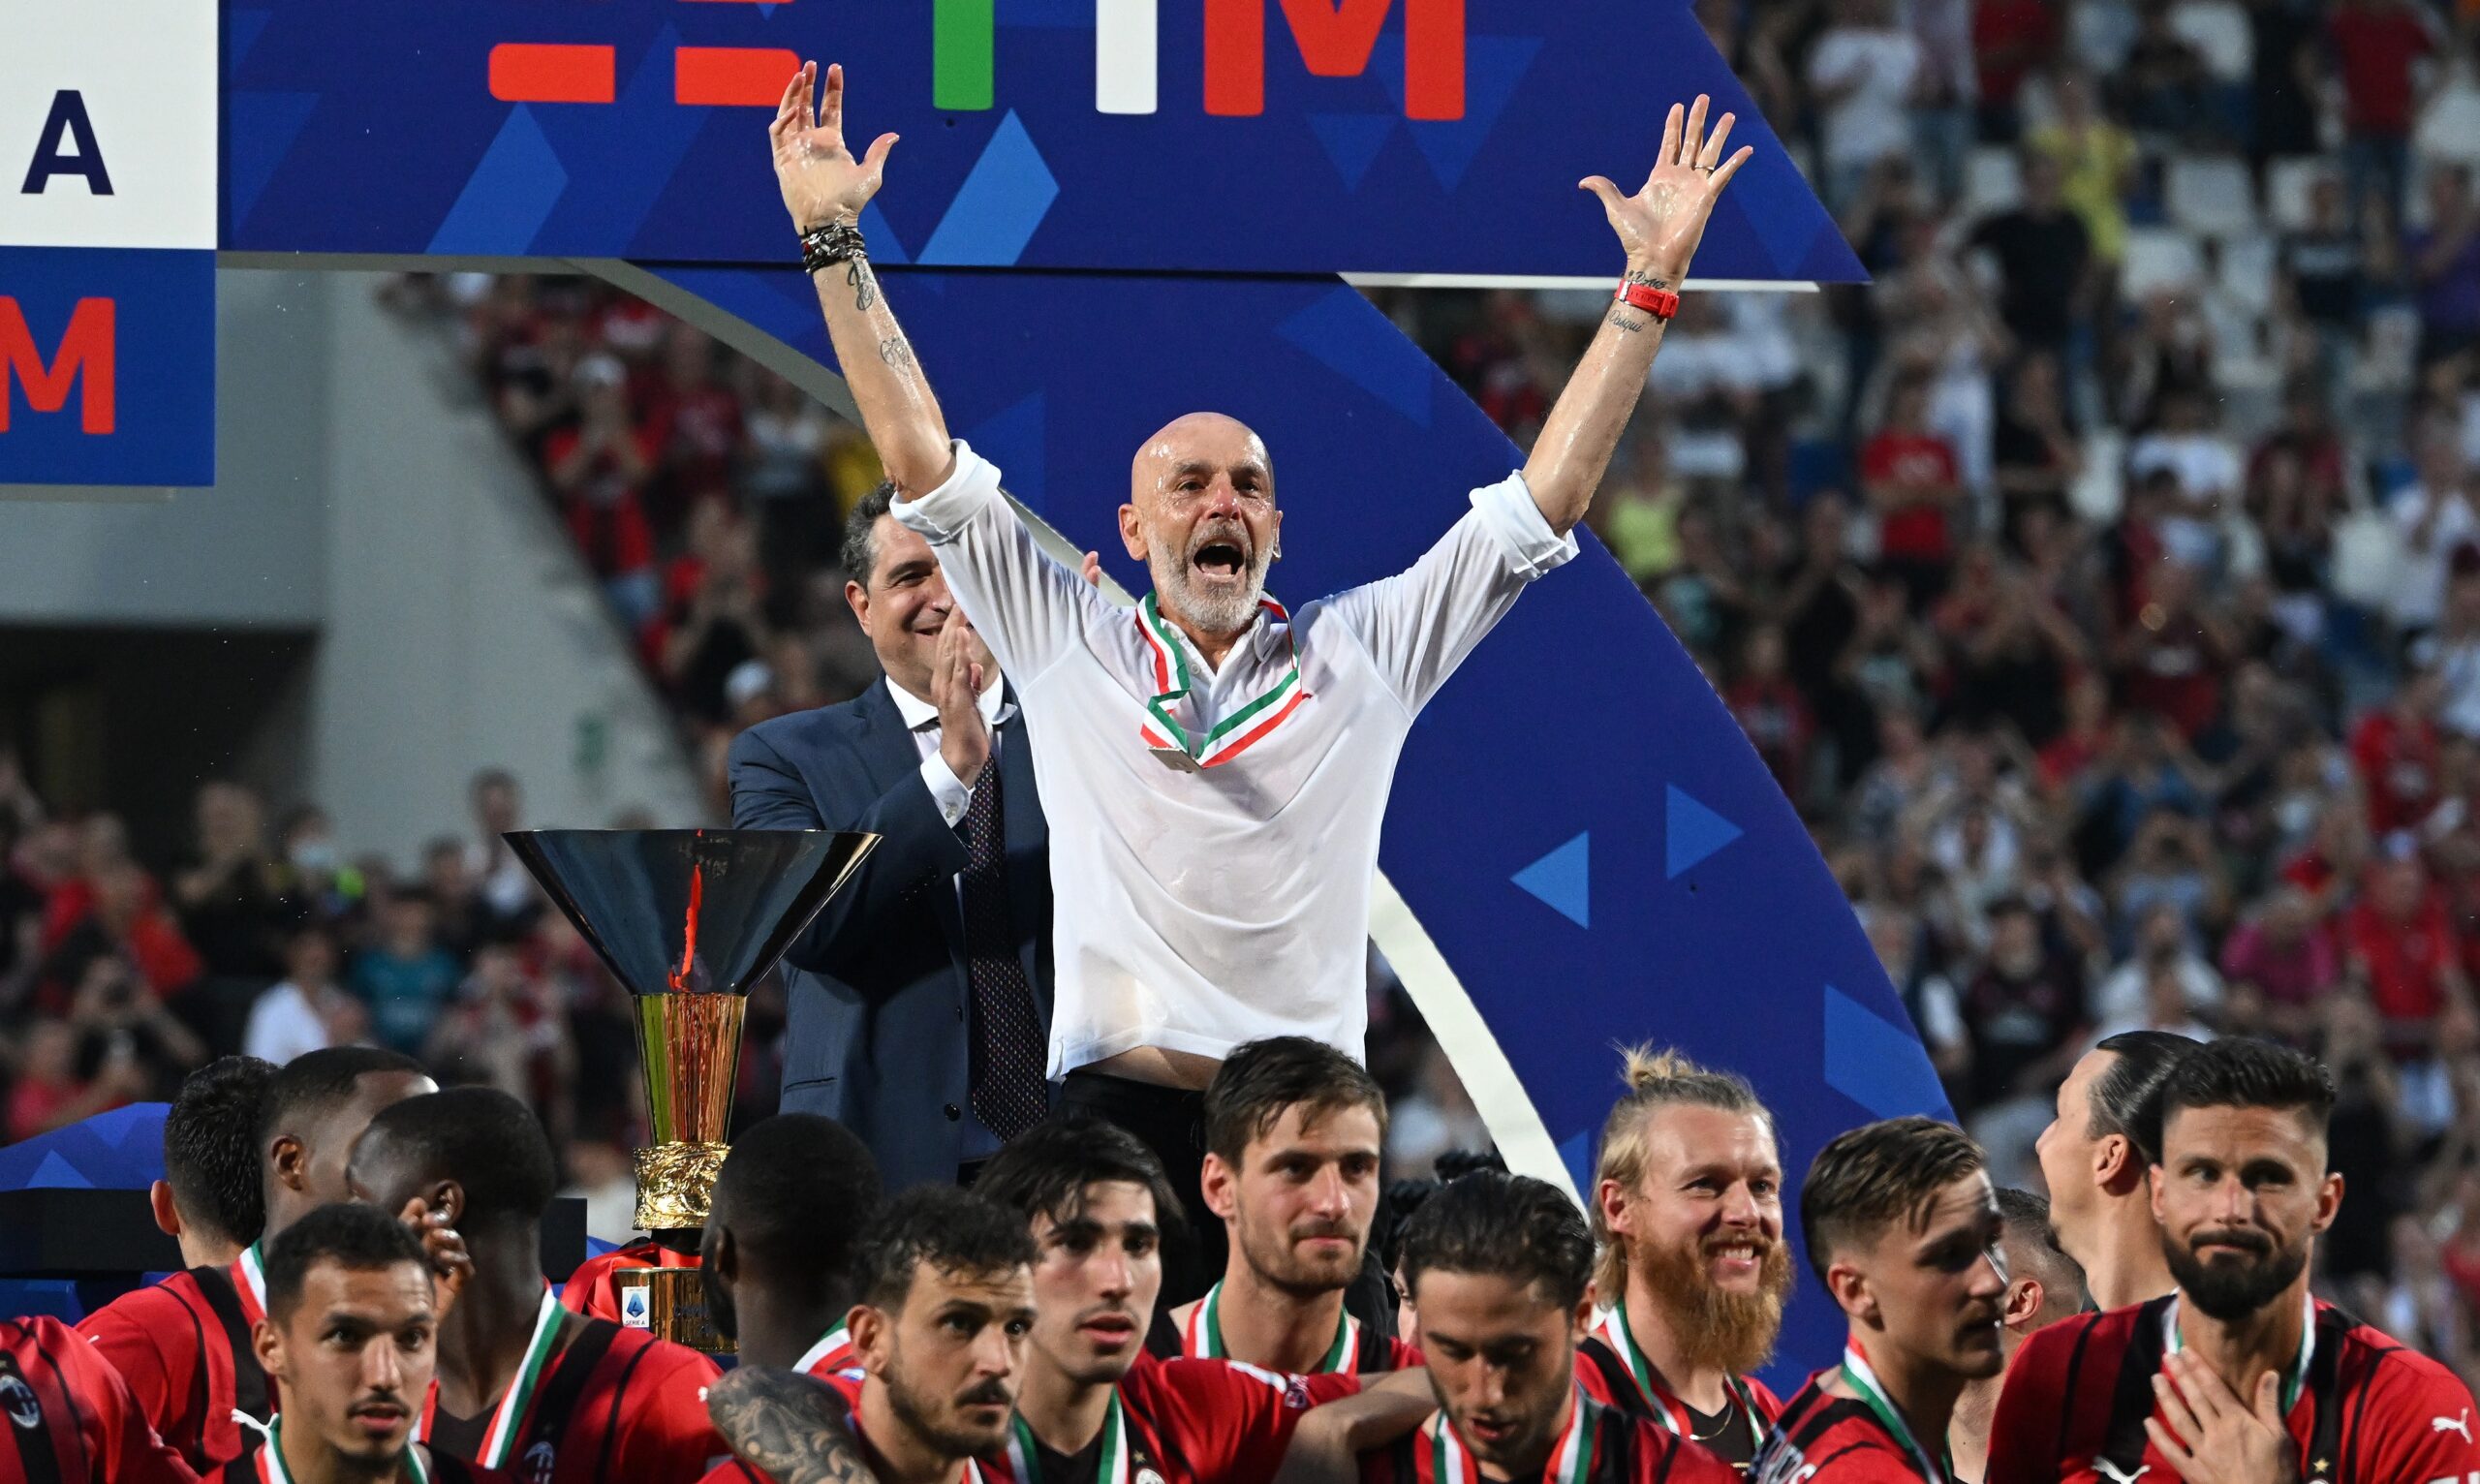 Medalia lui Stefano Pioli a fost furată, în timp ce sărbătorea câștigarea titlului alături de fanii lui Milan! ”E singura pe care o am”